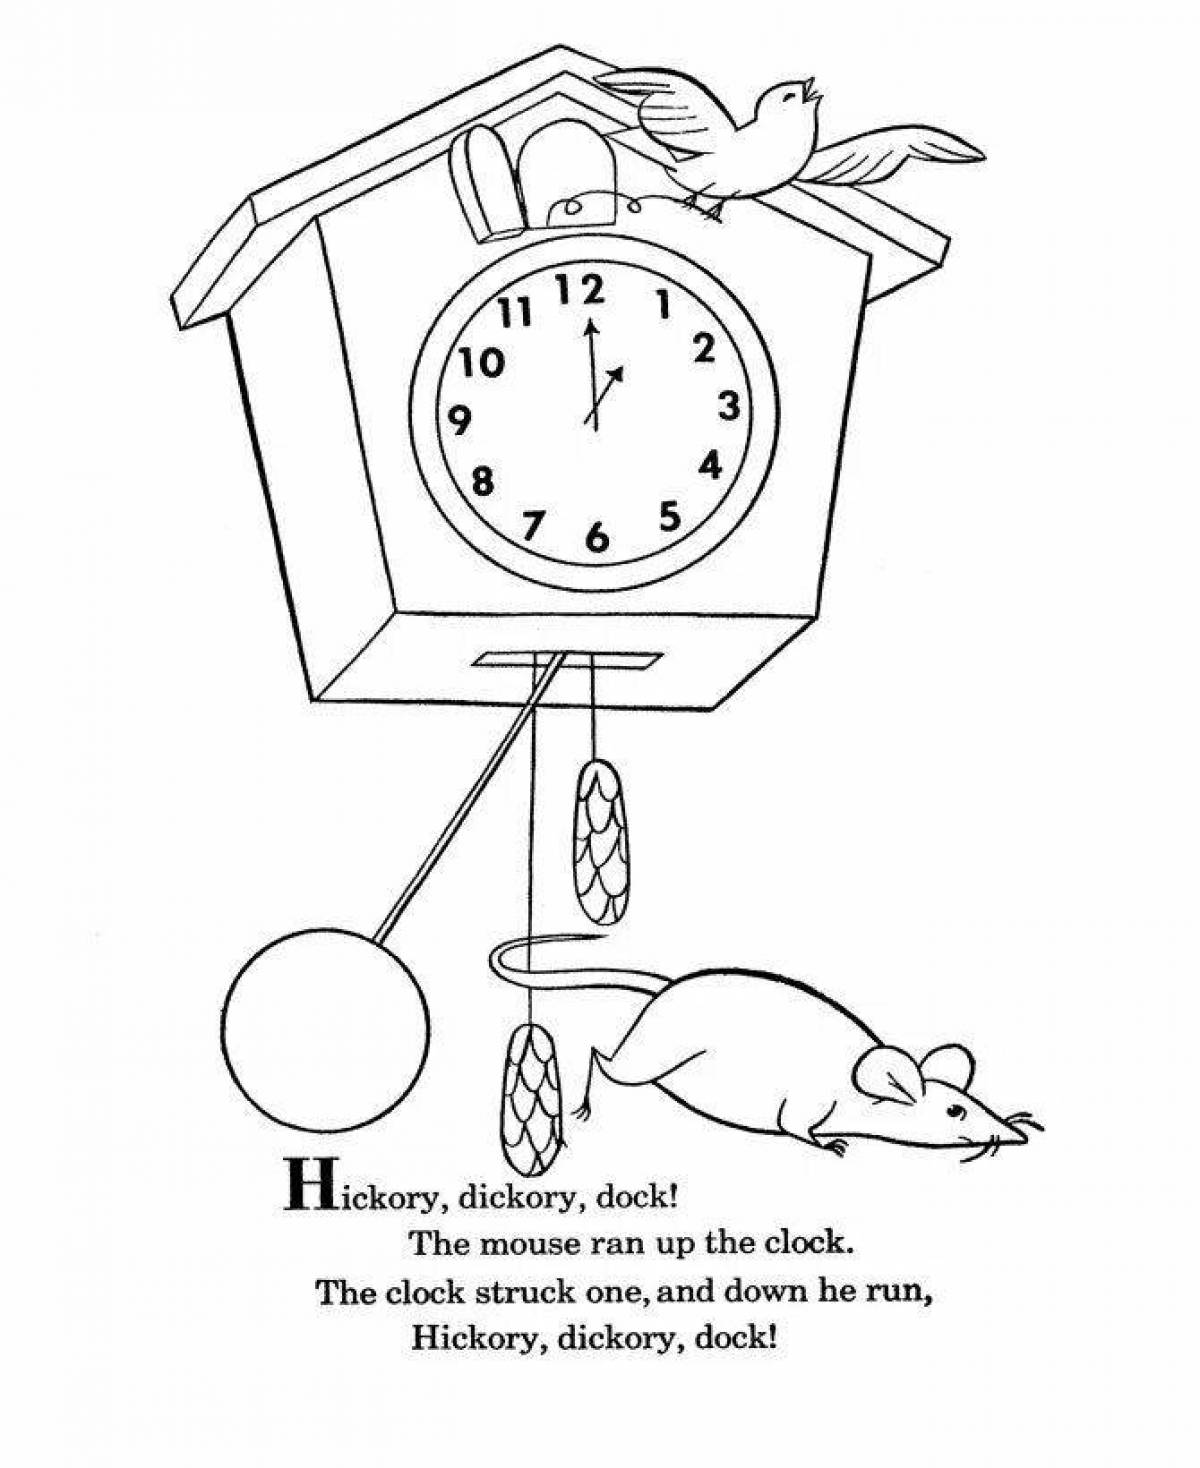 Cuckoo clock #3